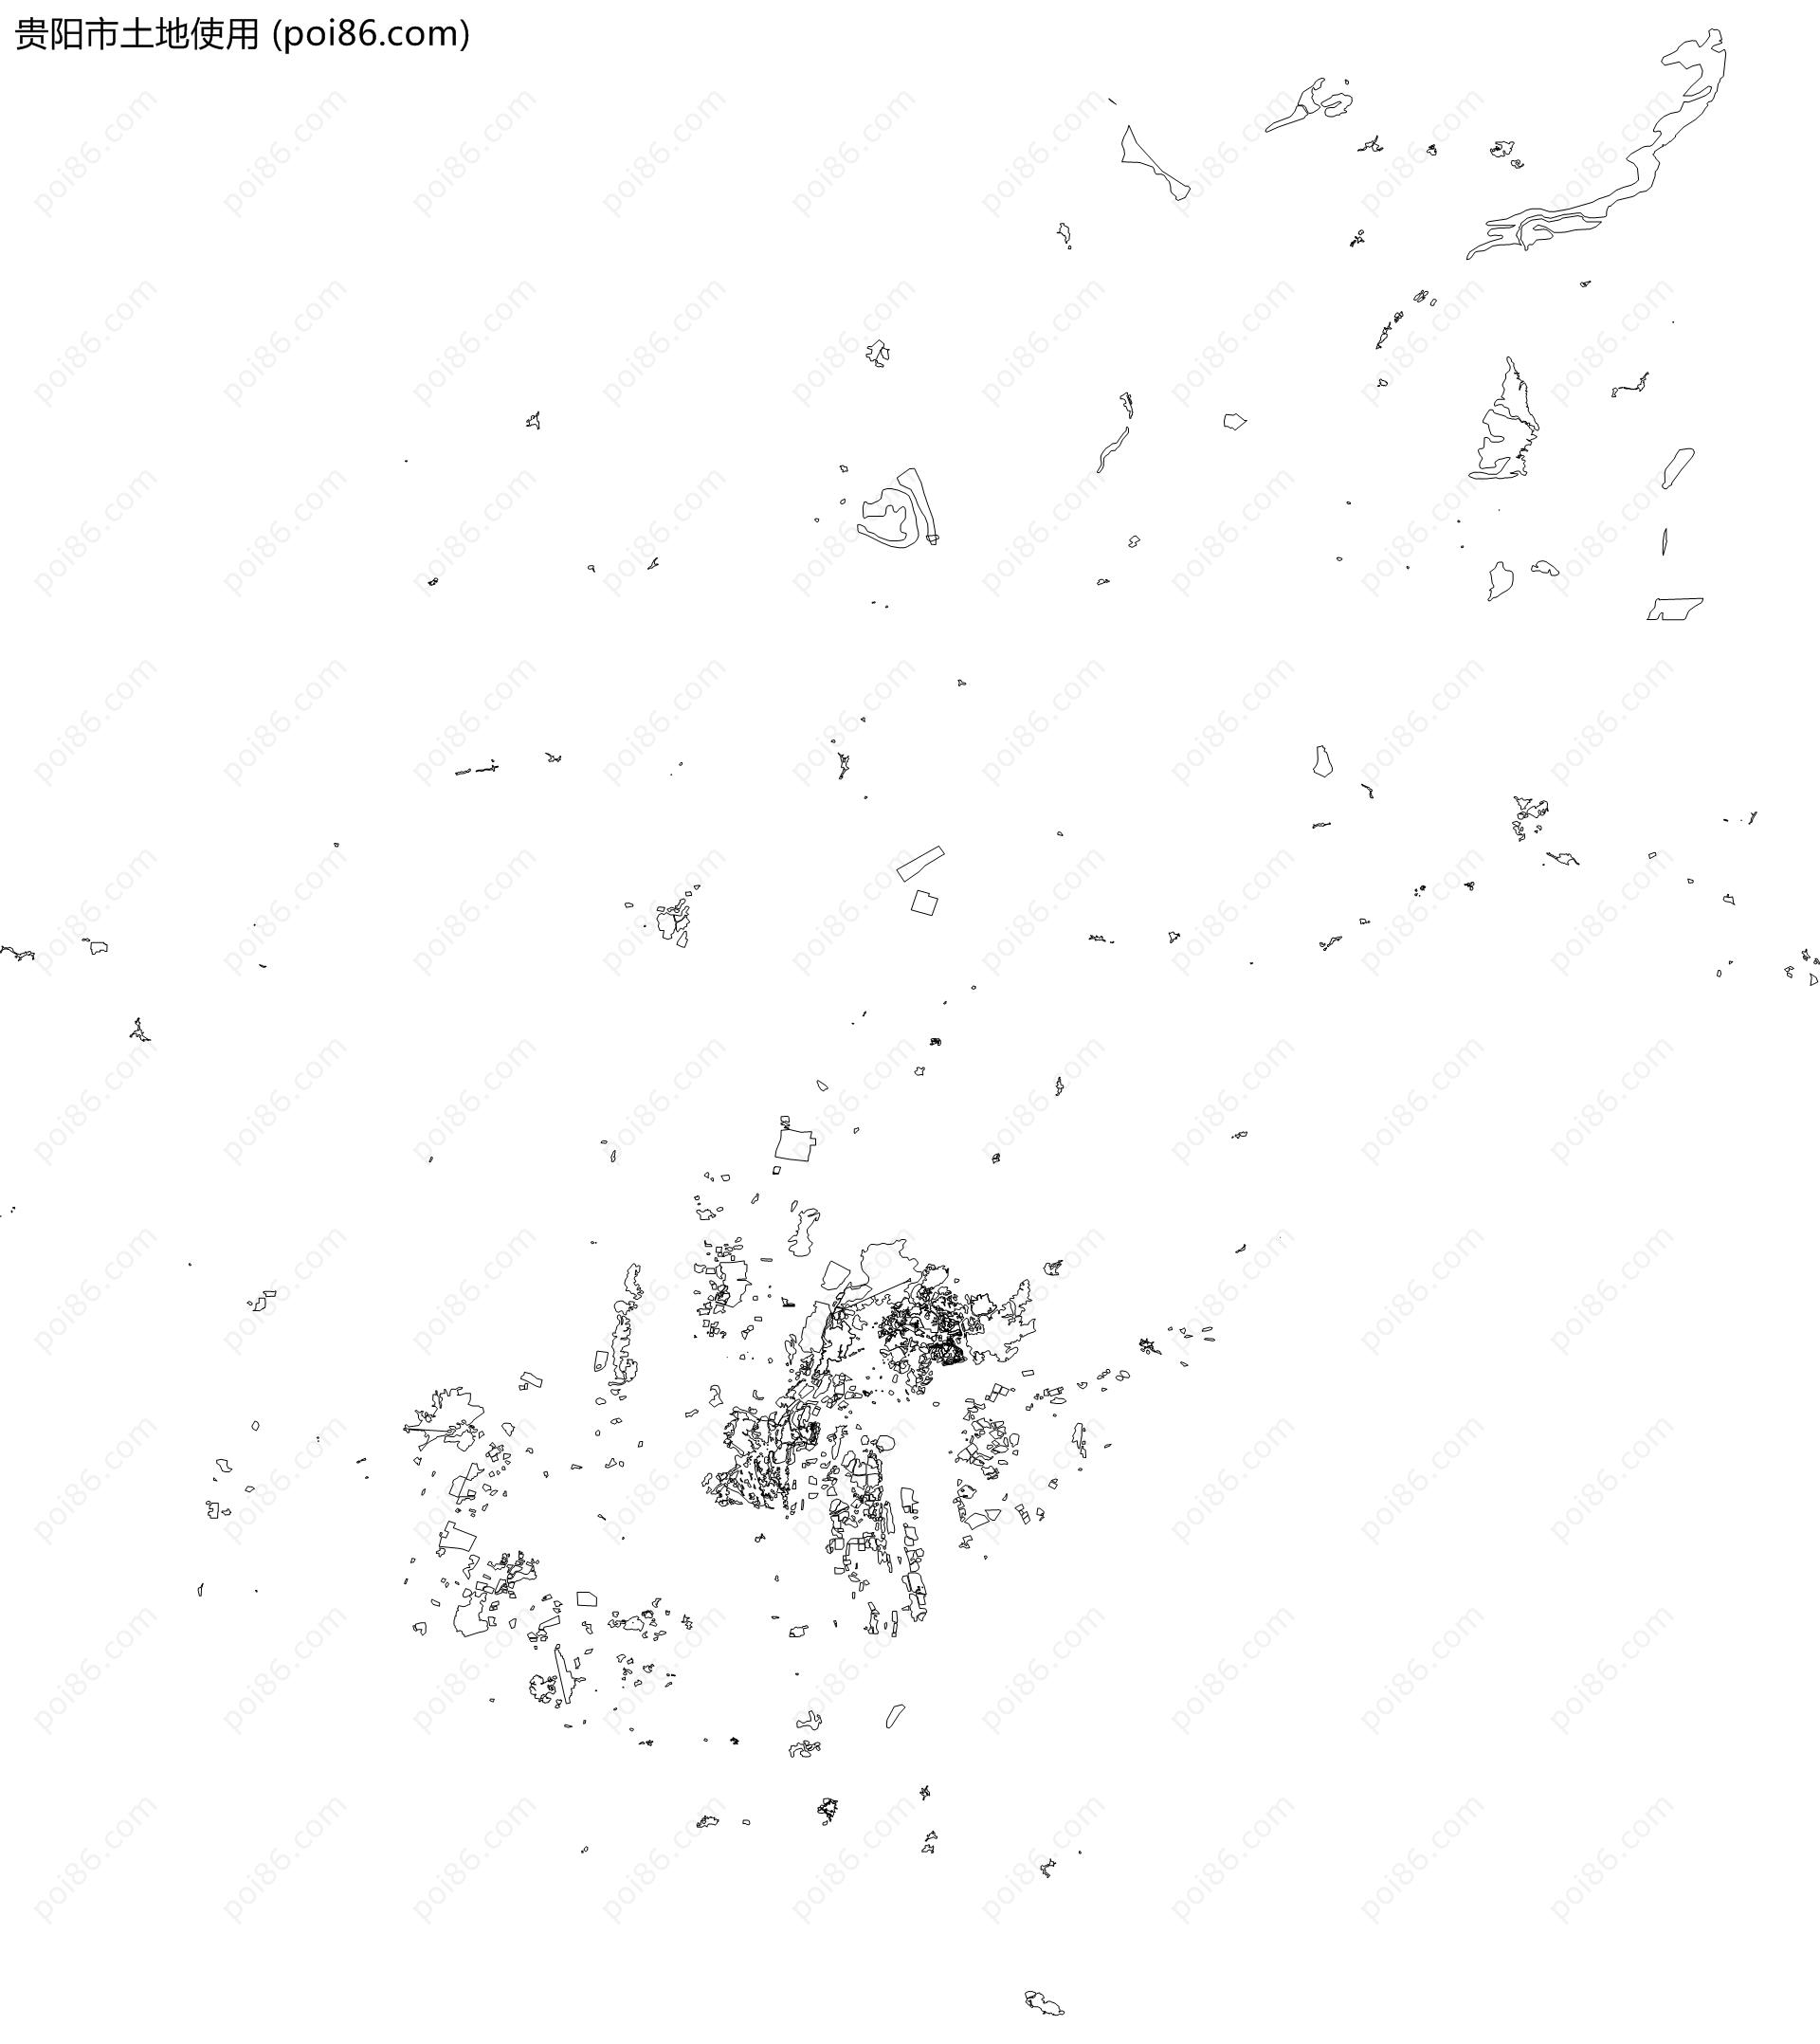 贵阳市土地使用地图